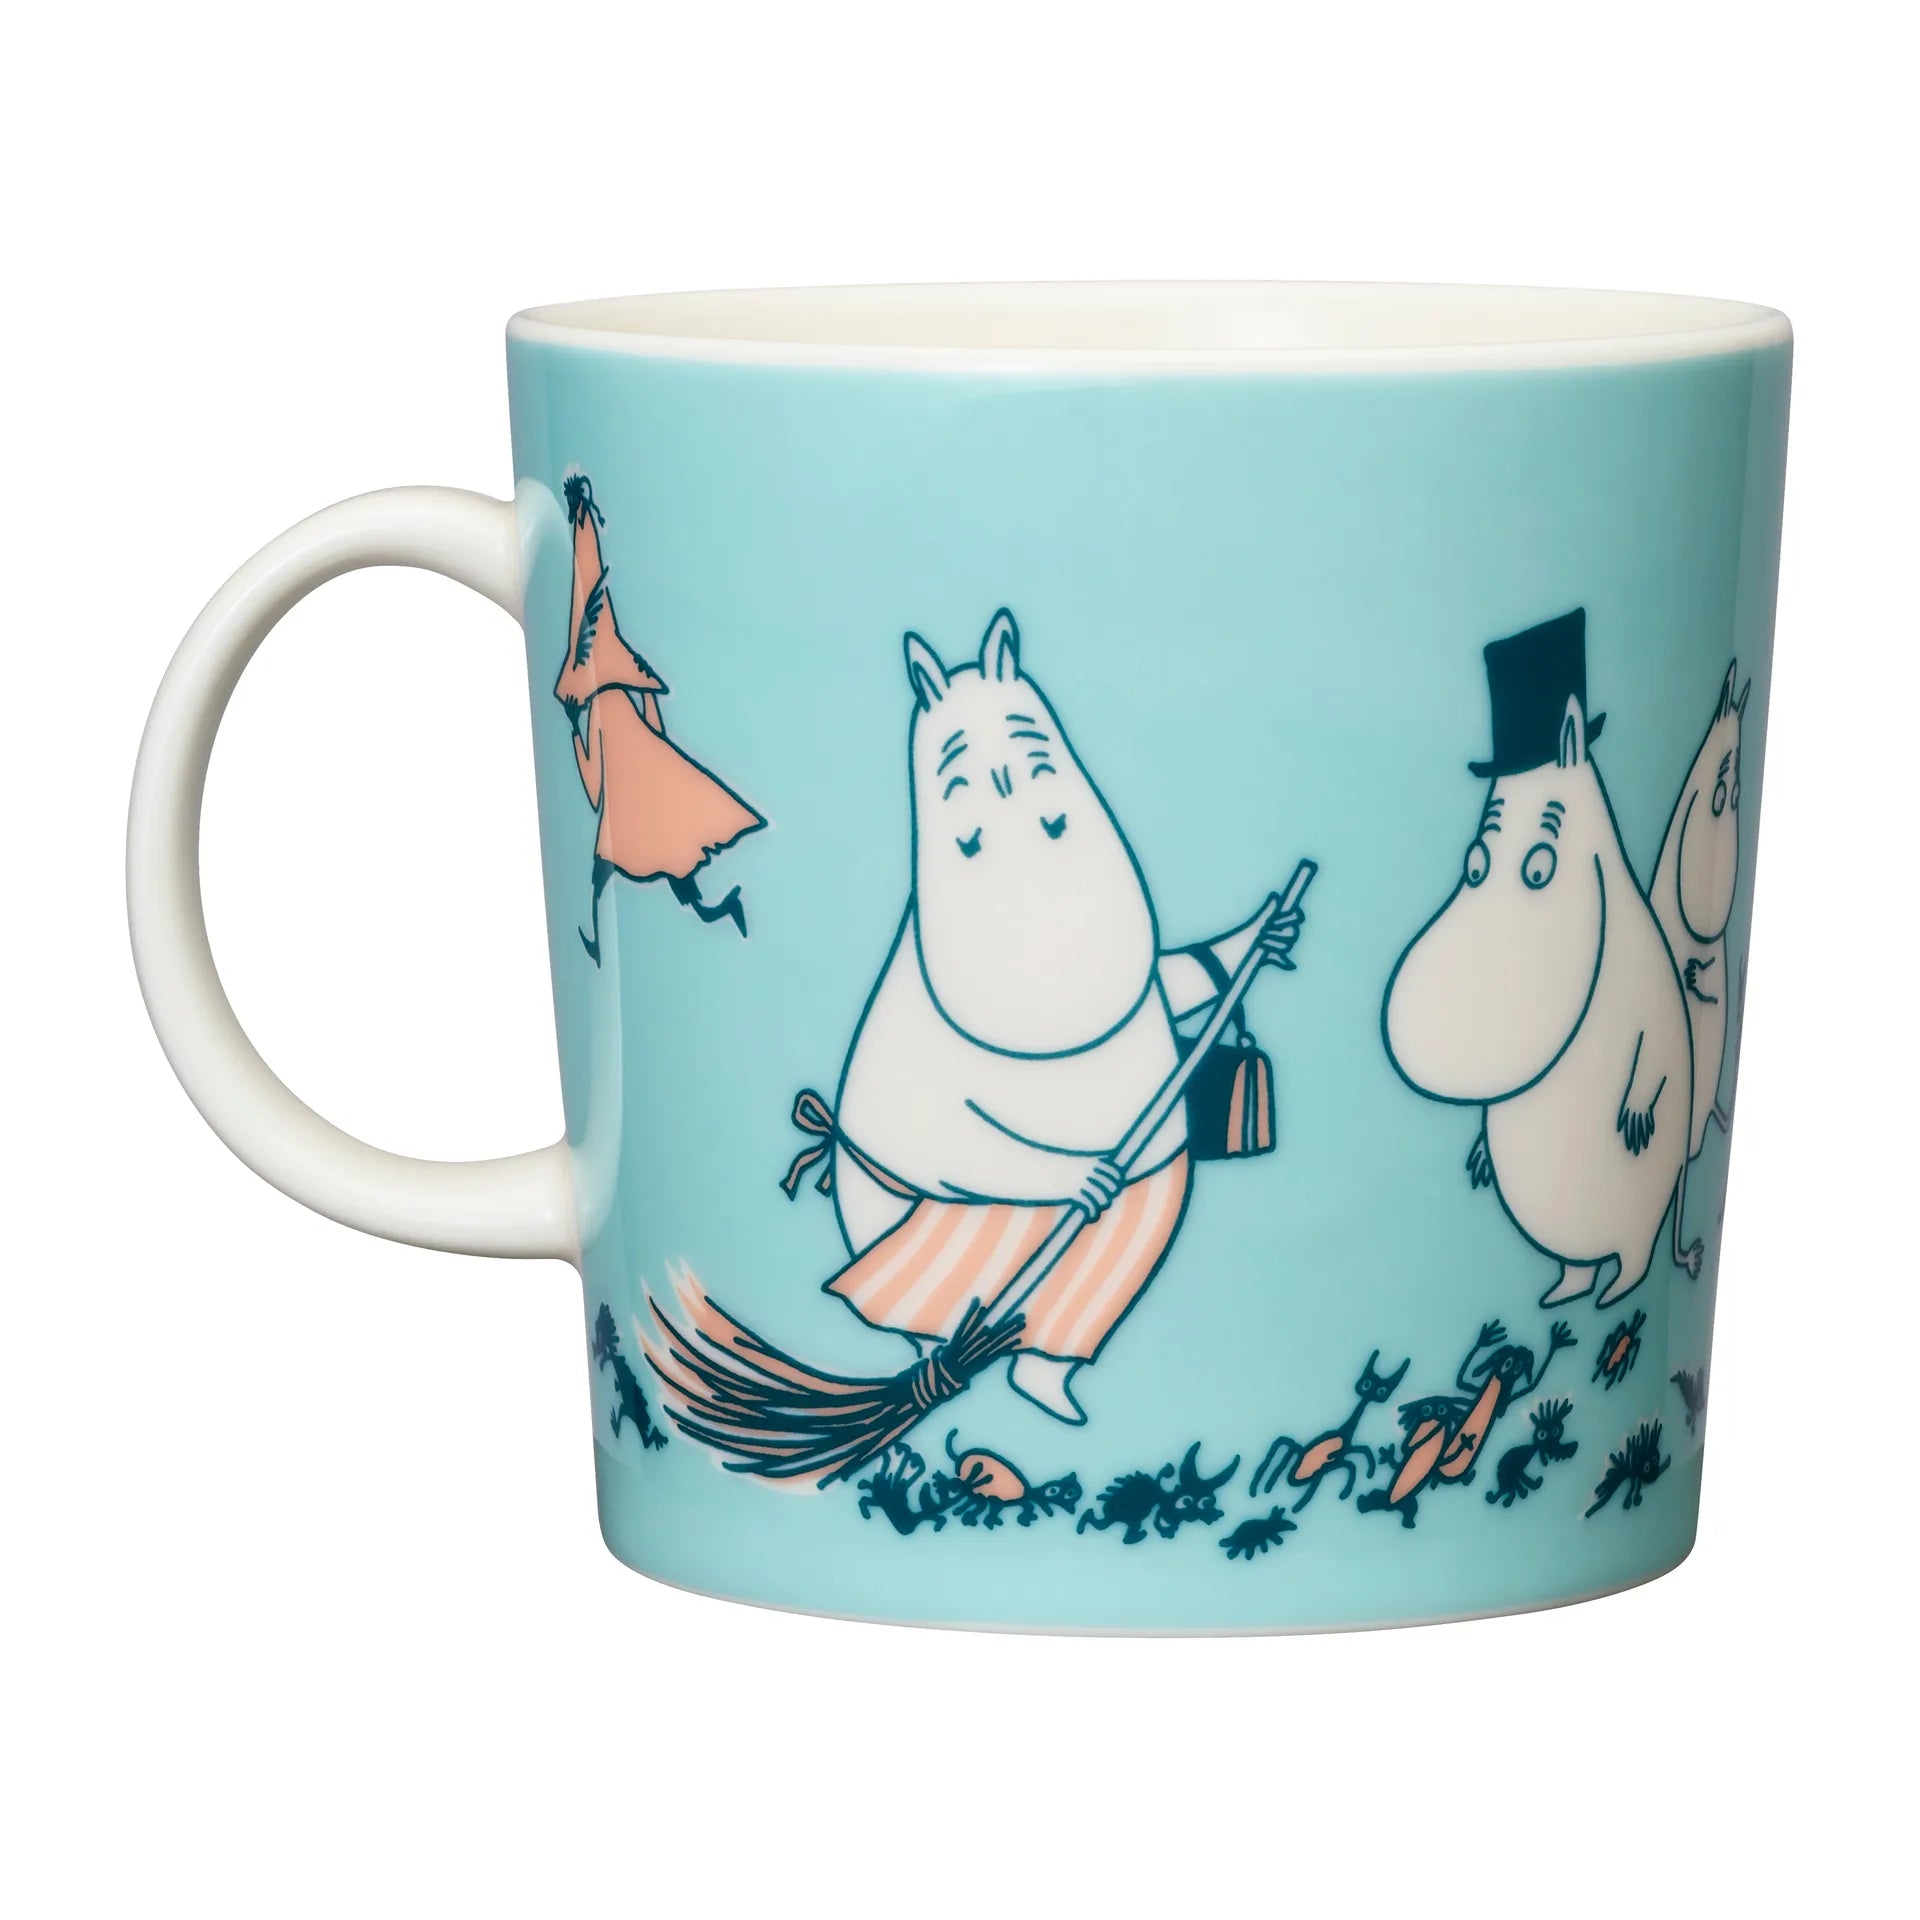 Moomin mug special LARGE 400ml ABC Moomin mug 40 cl H